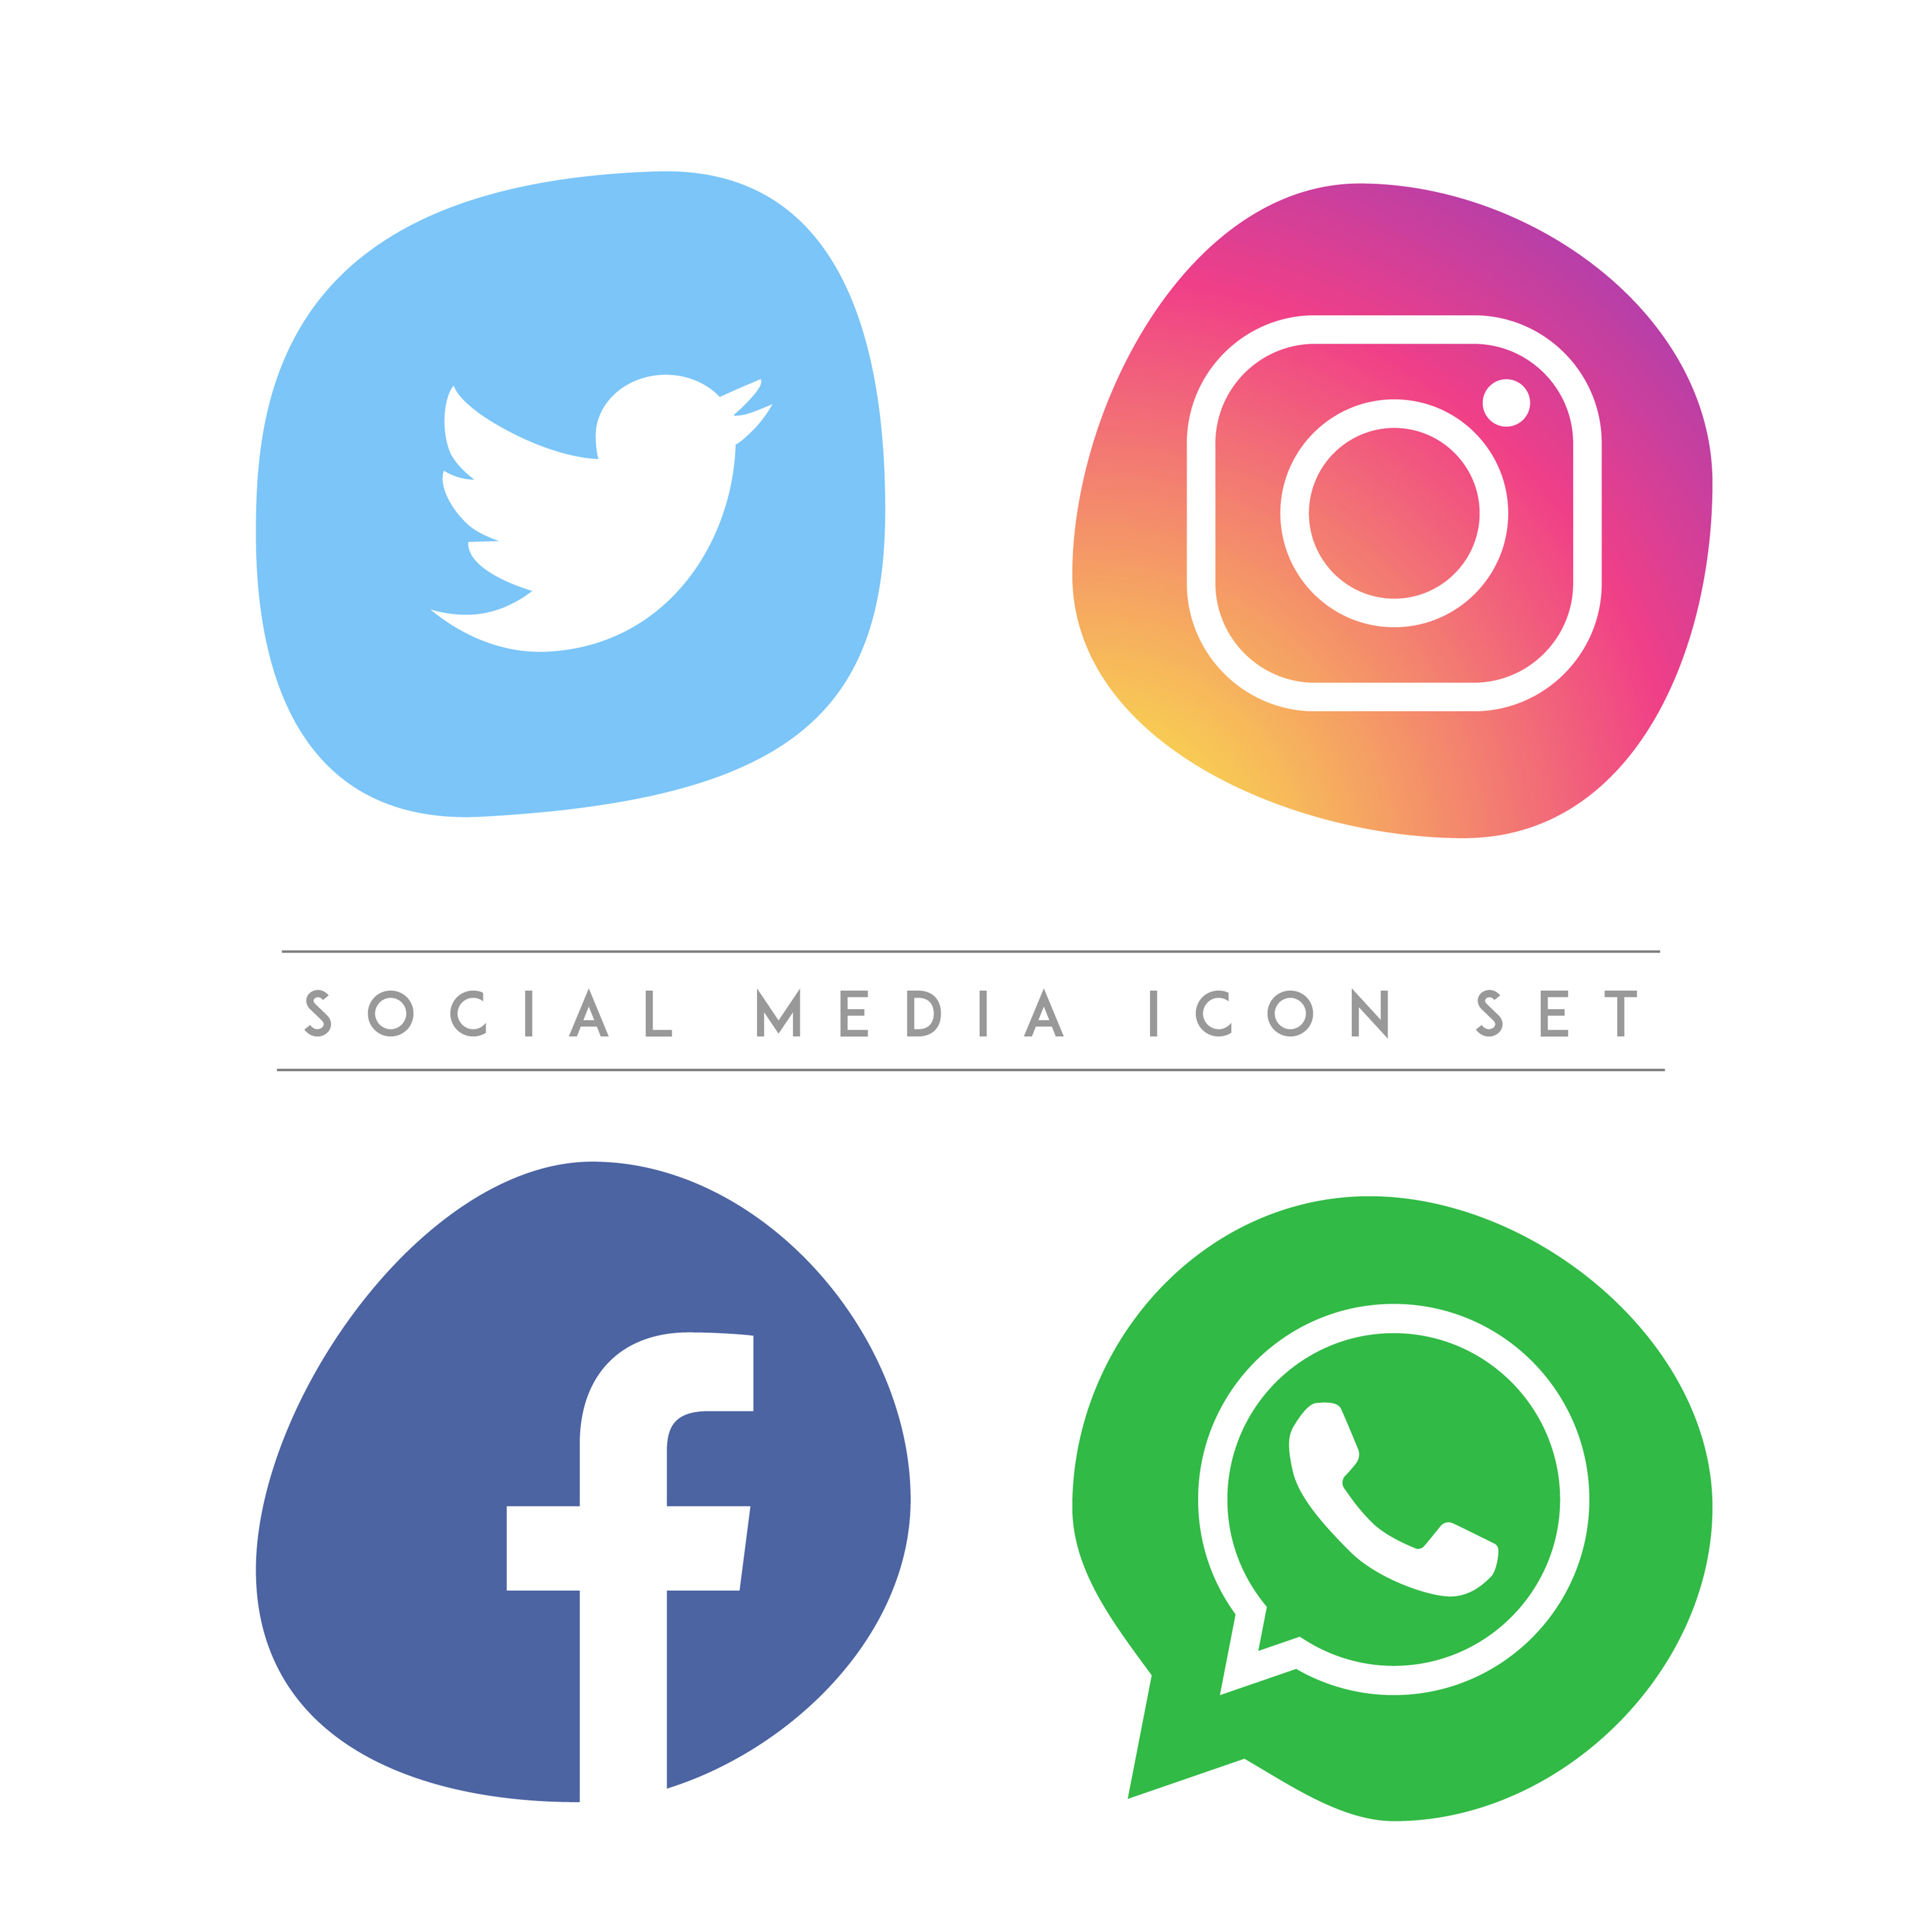 Download Social Media Vector Icon Set - Download Free Vectors ...